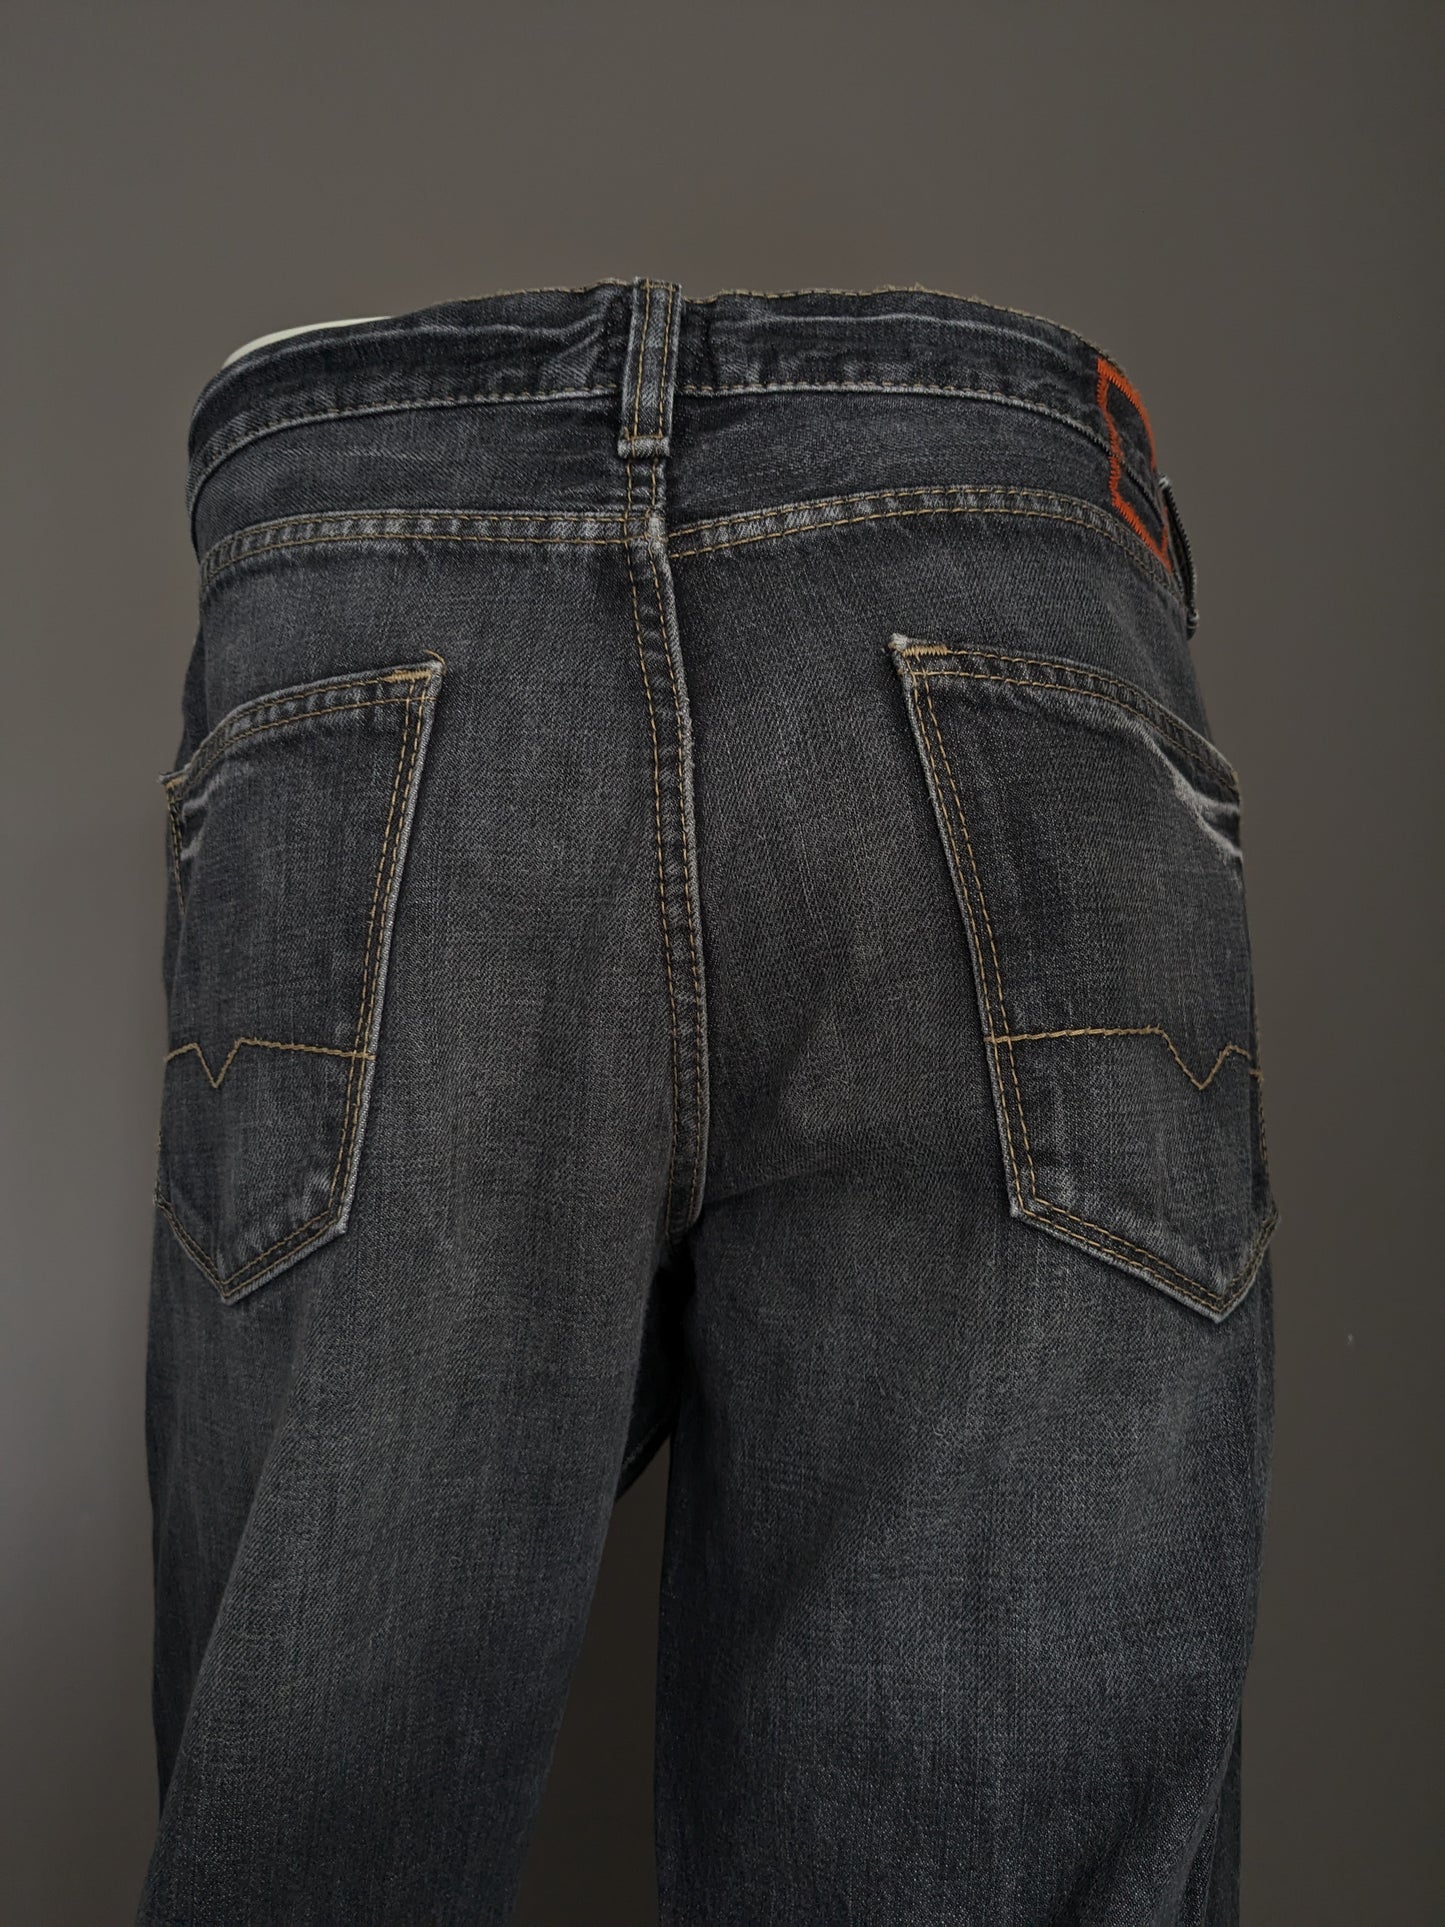 Boss Hugo Boss Jeans. Schwarz gefärbt. Größe W38 - L34.